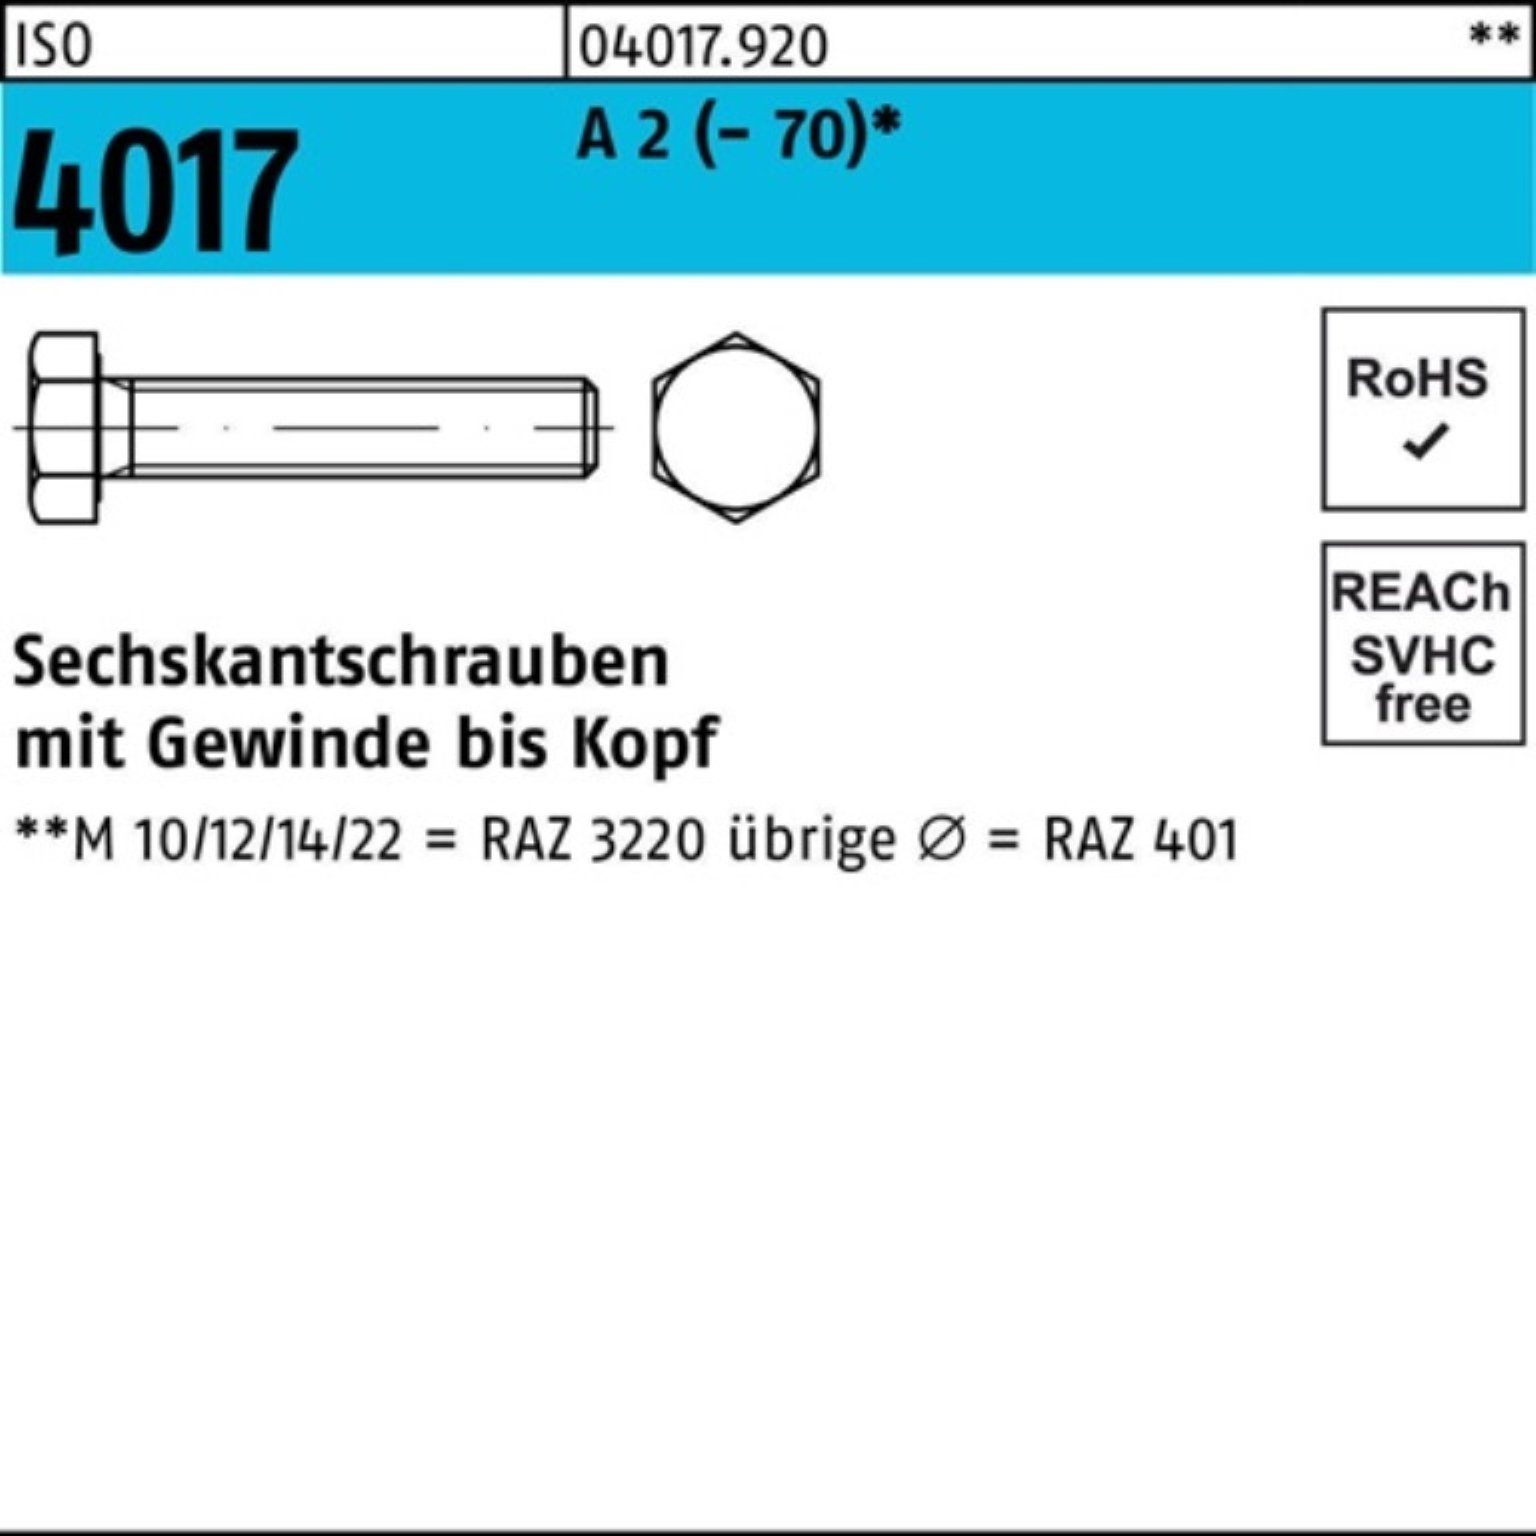 ISO (70) Bufab Sechskantschraube 16 Pack 100 M6x VG Stück Sechskantschraube 100er A 2 4017